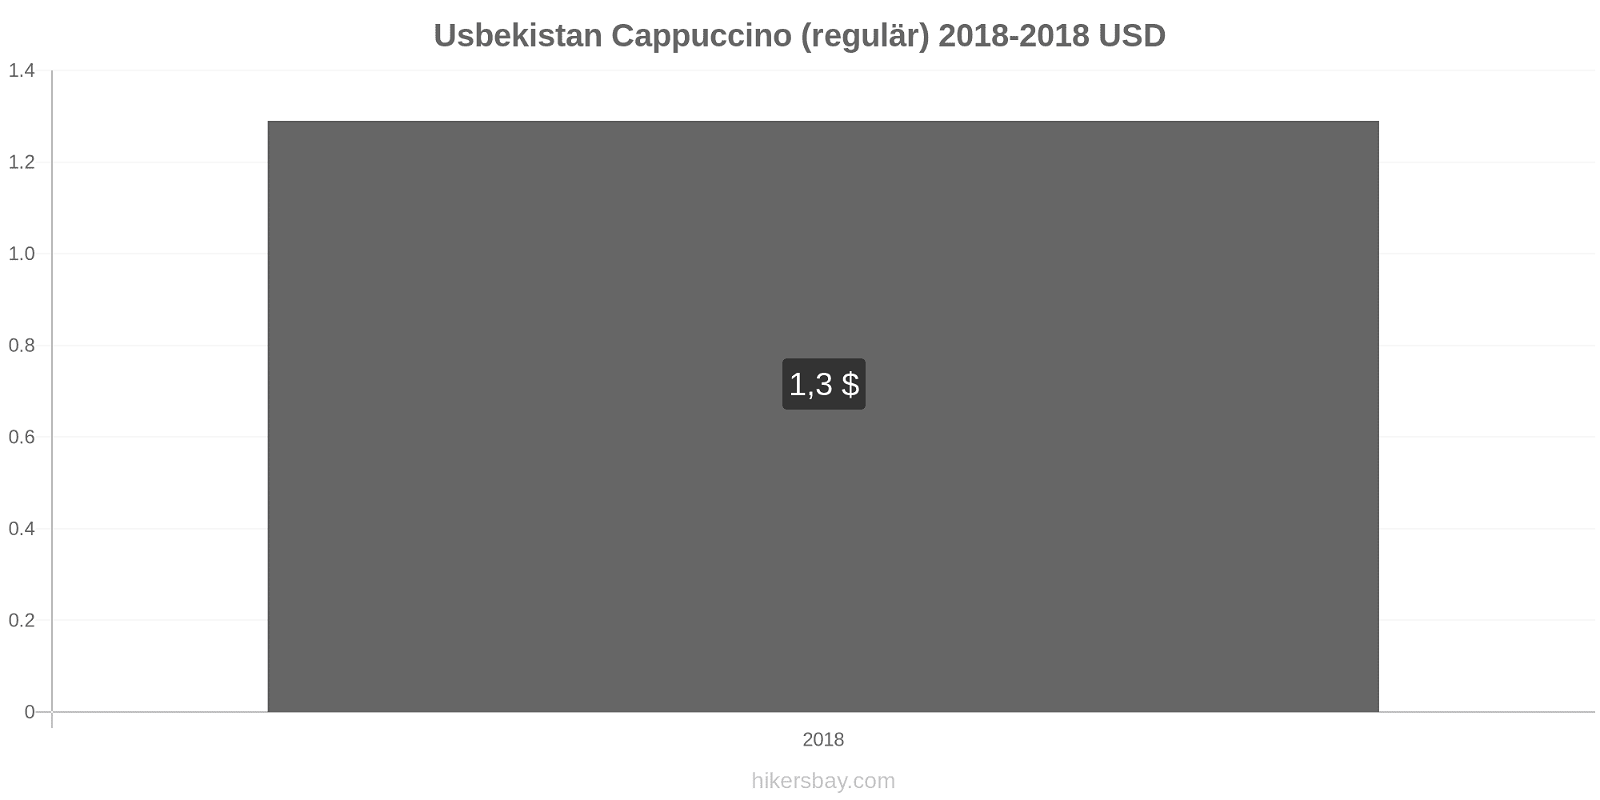 Usbekistan Preisänderungen Cappuccino (regulär) hikersbay.com